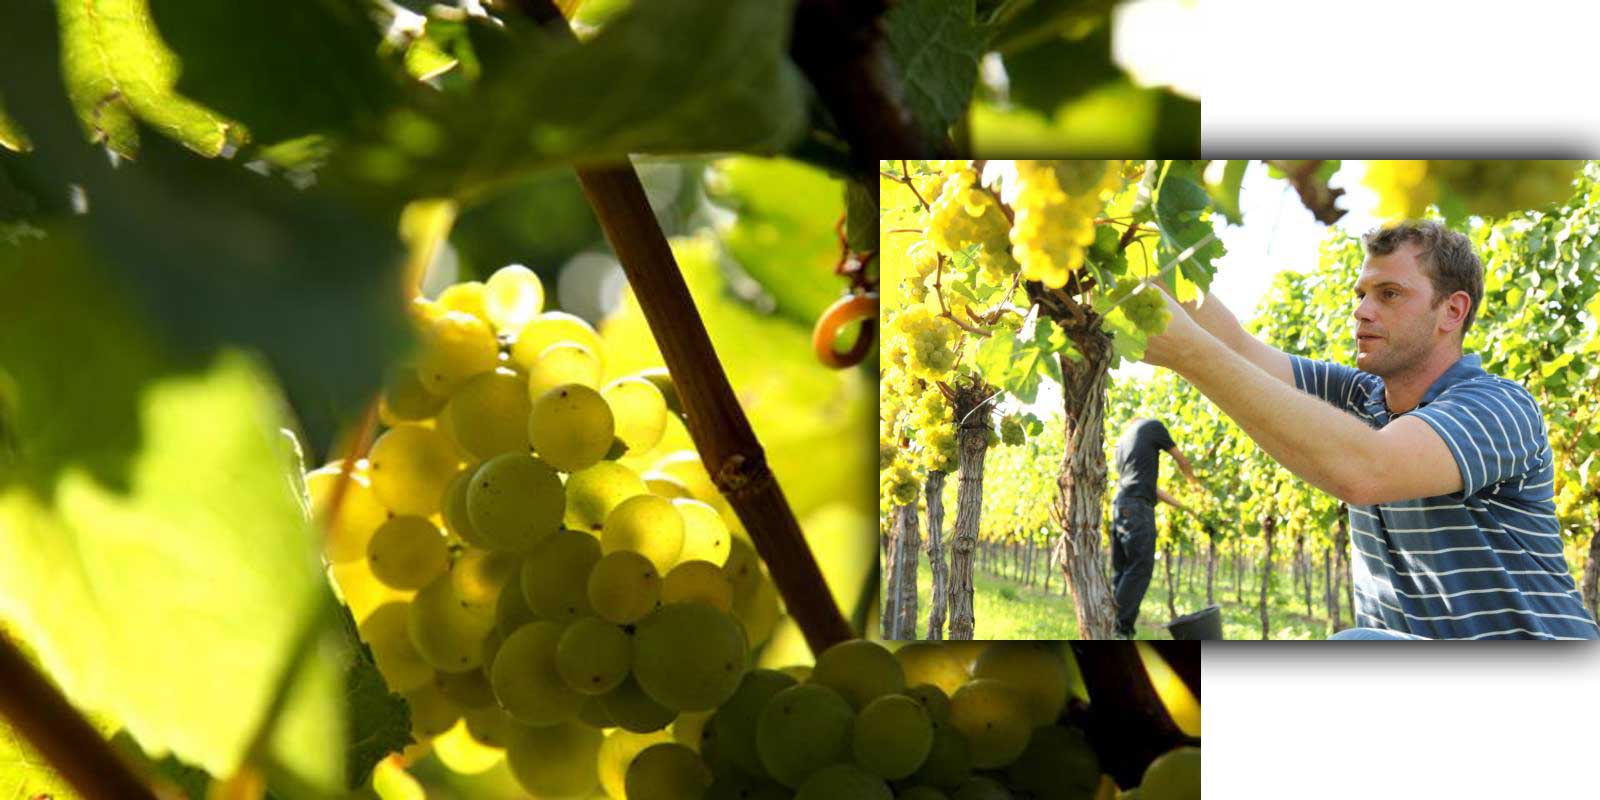 Vinarija Aloisiushof - Palatinat / Alois Kiefer vinorodna regija Porodica Kiefer uzgaja vino u Pfalcu od 17. vijeka. Alois Kiefer je osnovao vinariju Aloisiushof 1950. godine, koju sada vode njegova tri sina. Ekoloski prihvatljivi vinogradi, pazljiv rad u podrumu uzimajuci u obzir terroir karakteristike vina i stalna kontrola kvaliteta garancija su visokog kvaliteta Kieferovih vina.